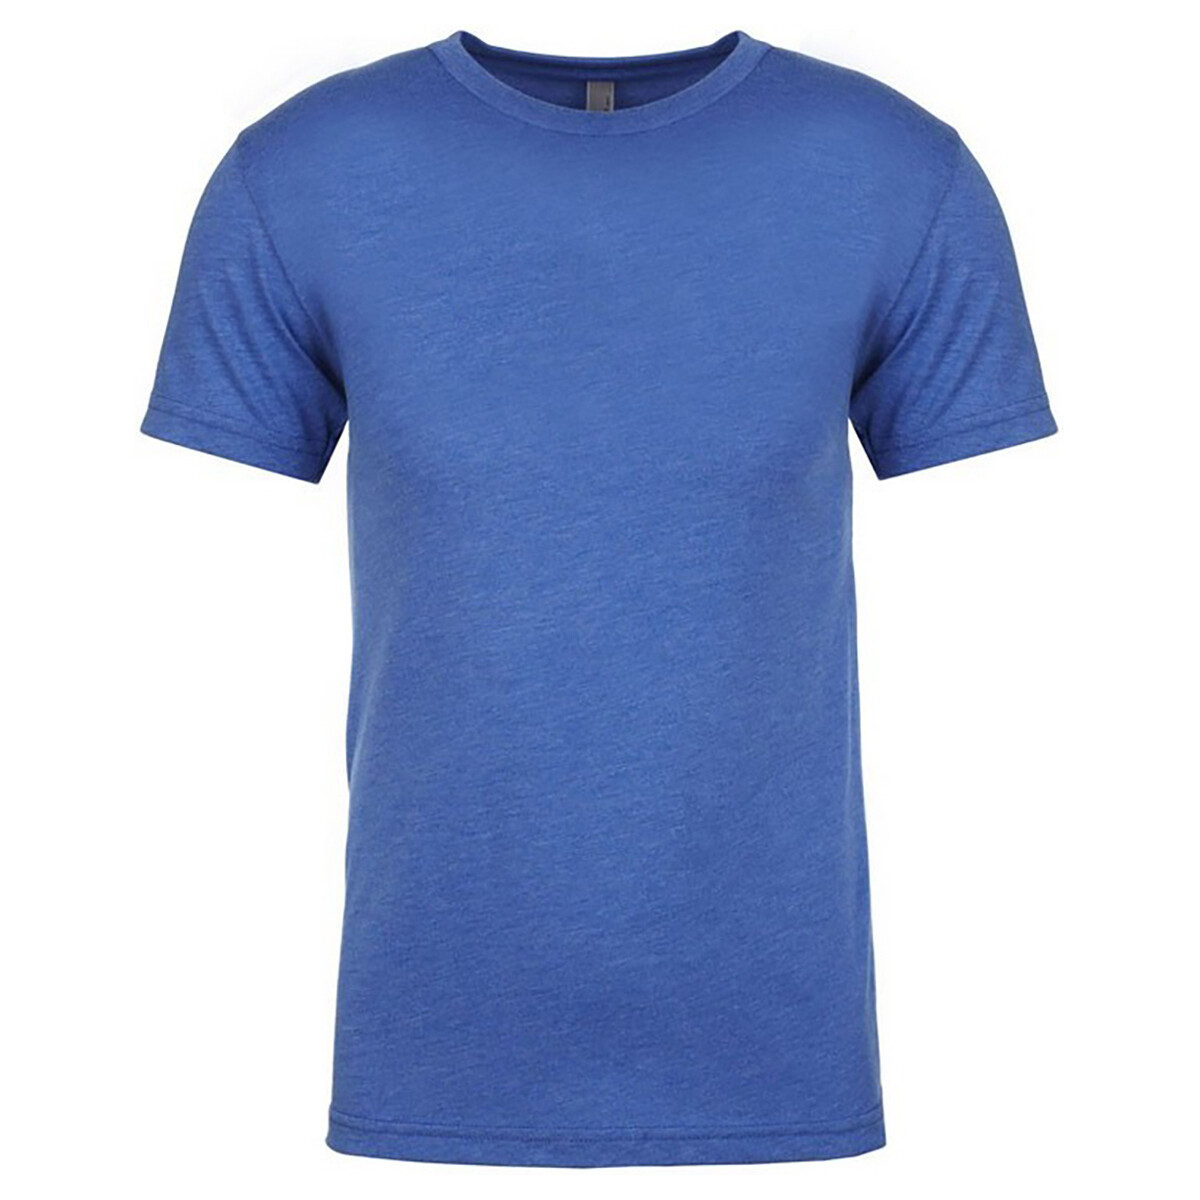 Abbigliamento Uomo T-shirts a maniche lunghe Next Level Tri-Blend Blu